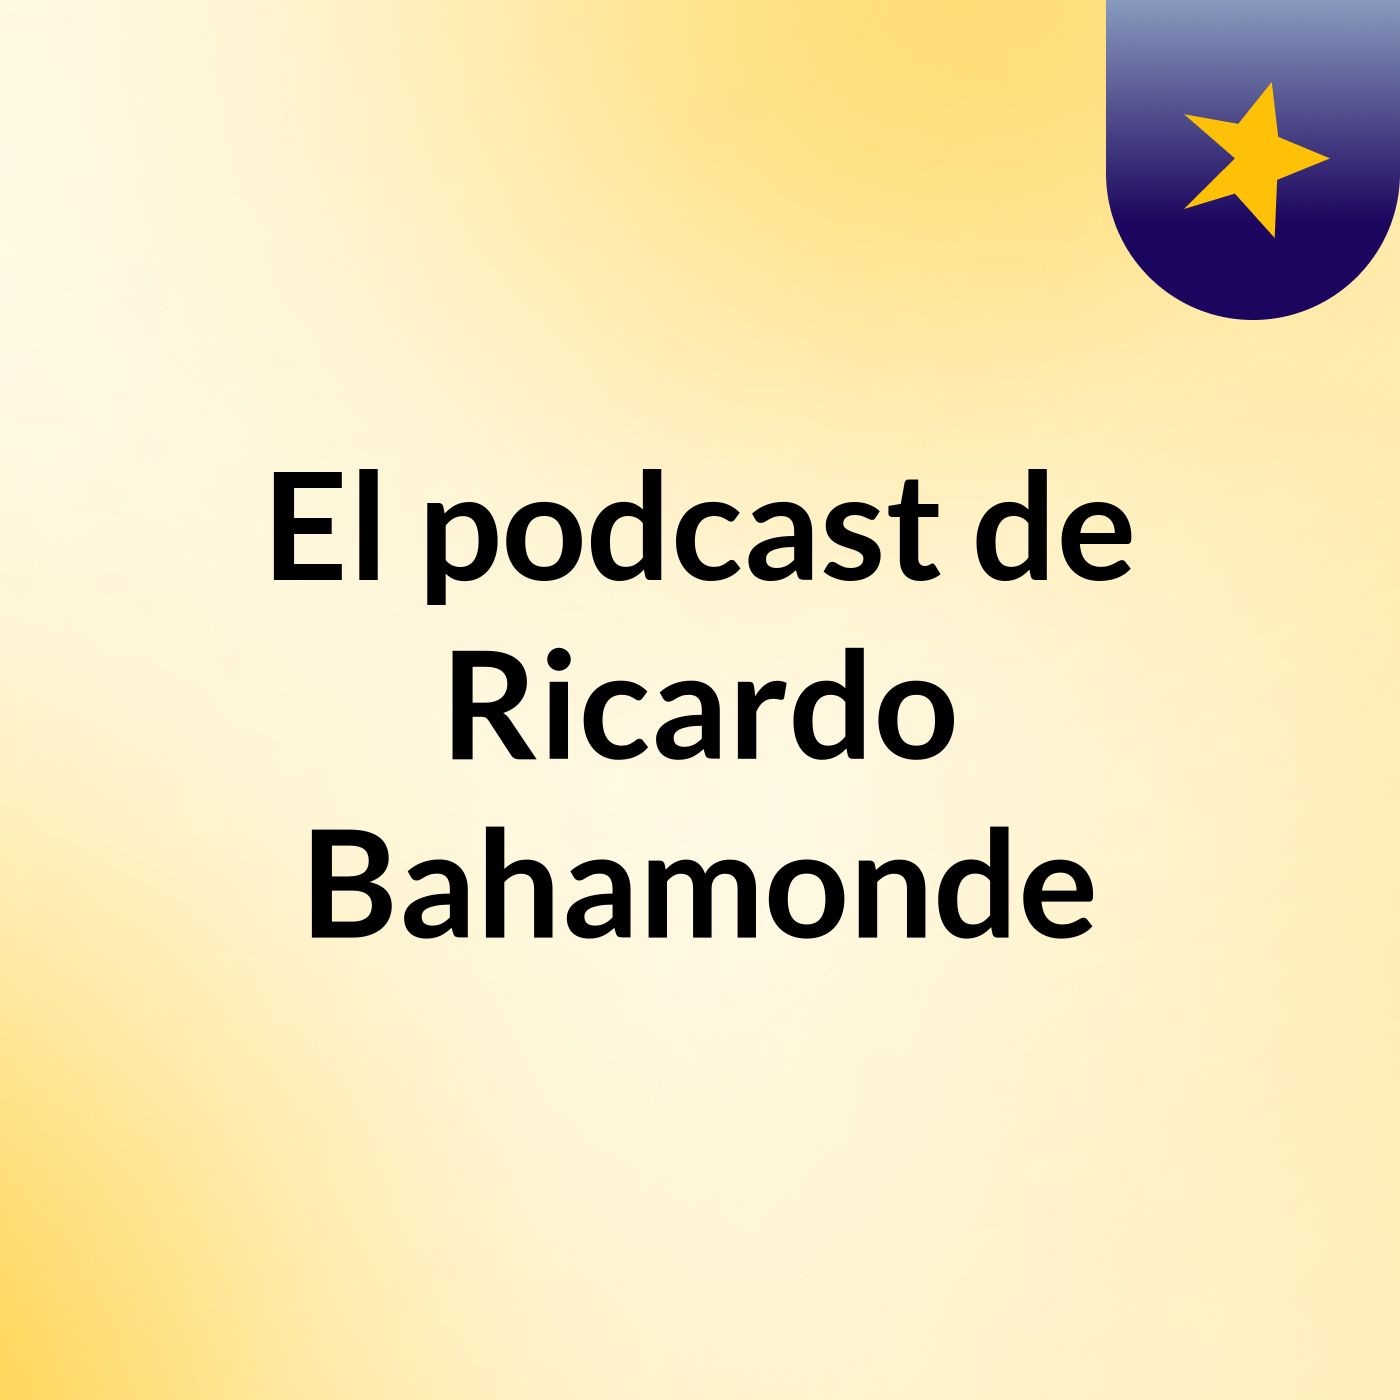 Episodio 2 - El podcast de Ricardo Bahamonde